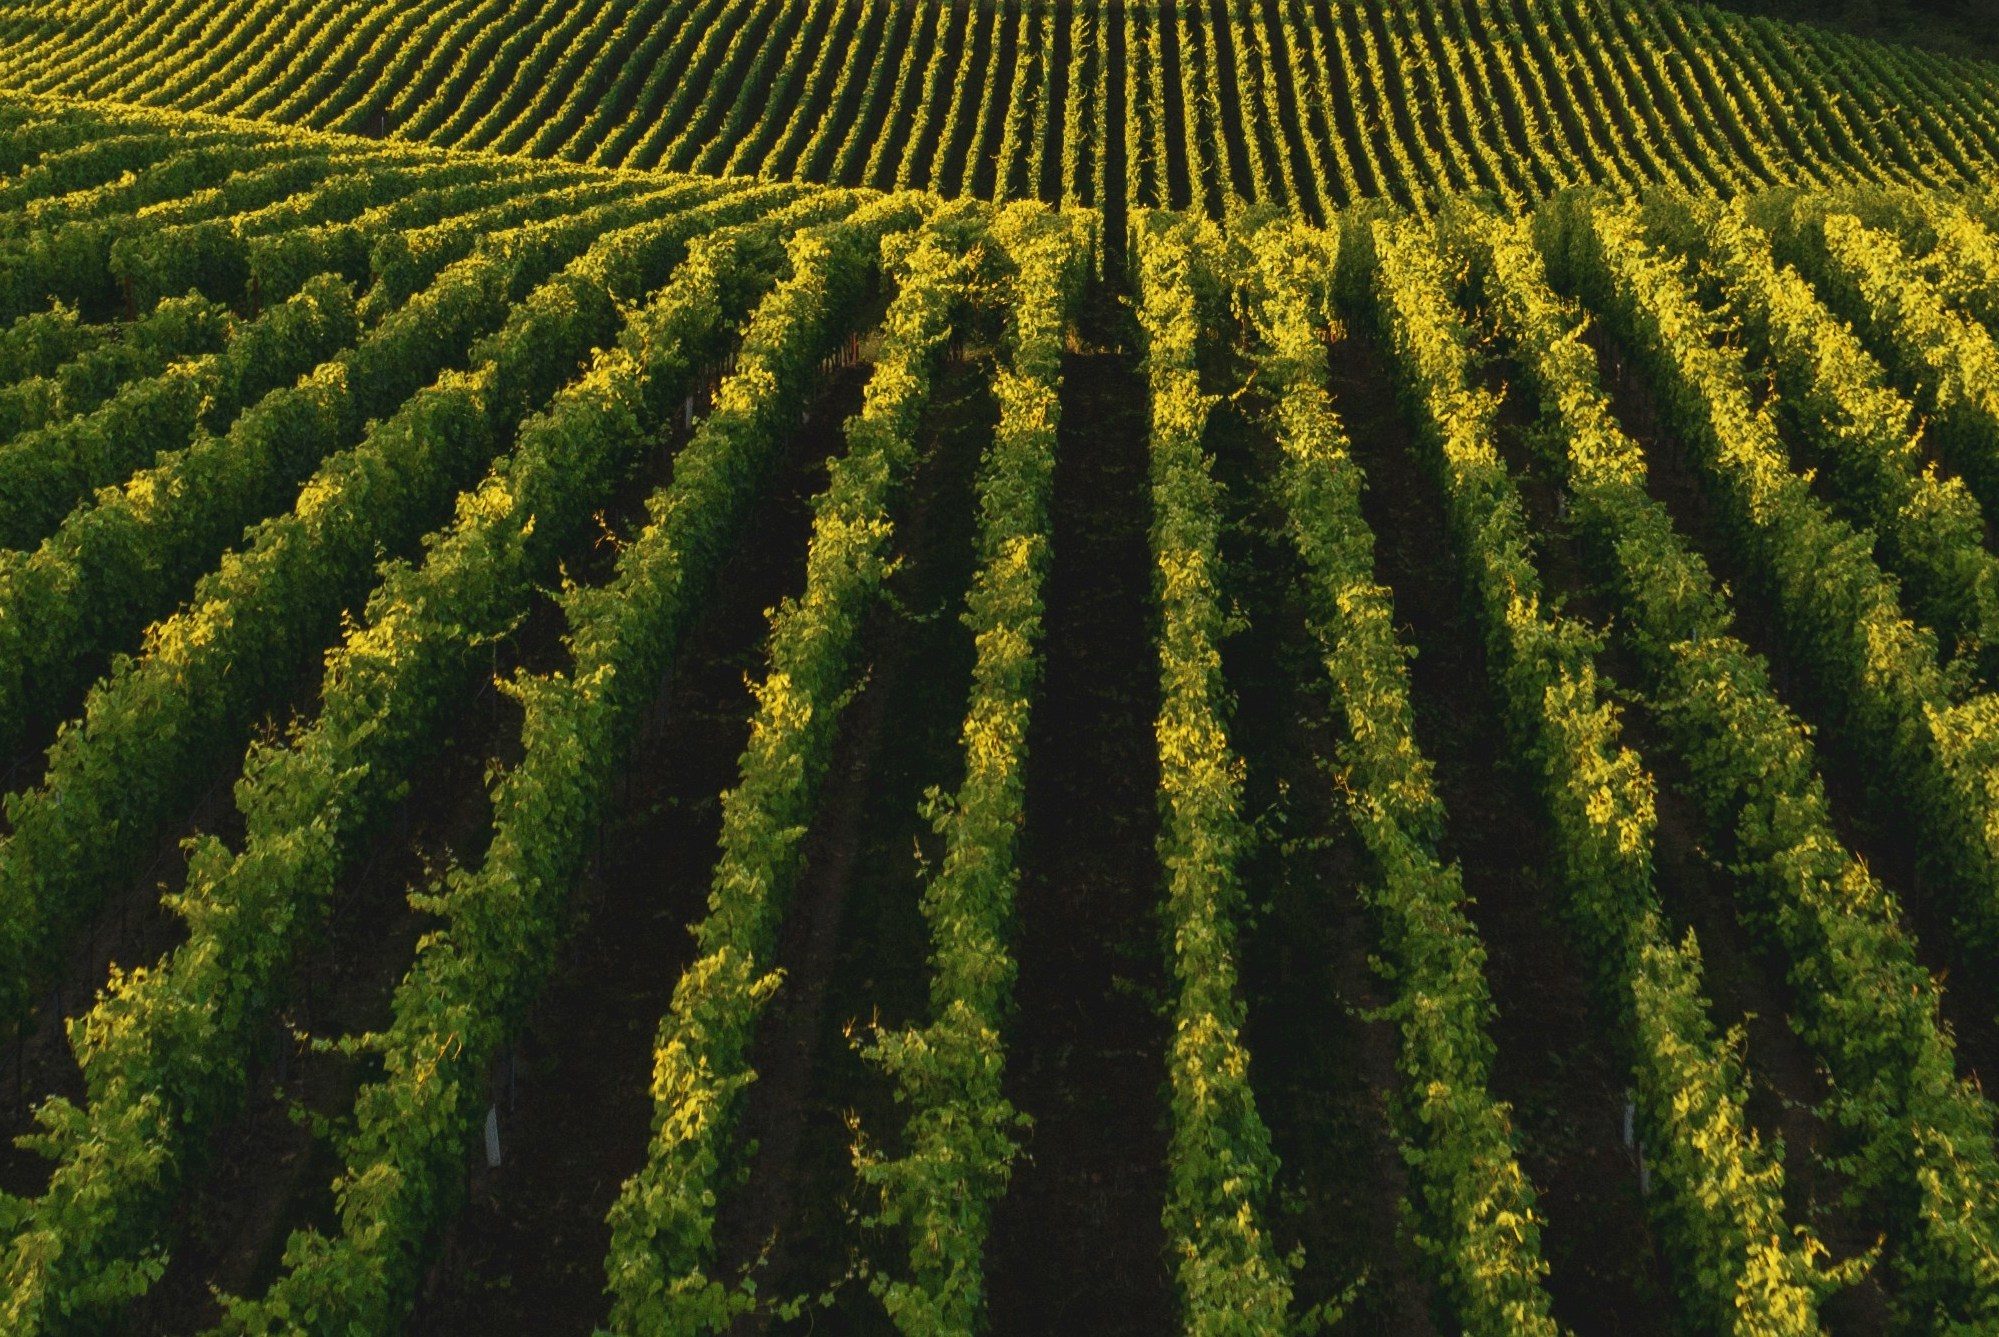 Weinberge, hier wird der 2021er Vier Jahreszeiten Nr.1 Rotwein Cuvée angebaut